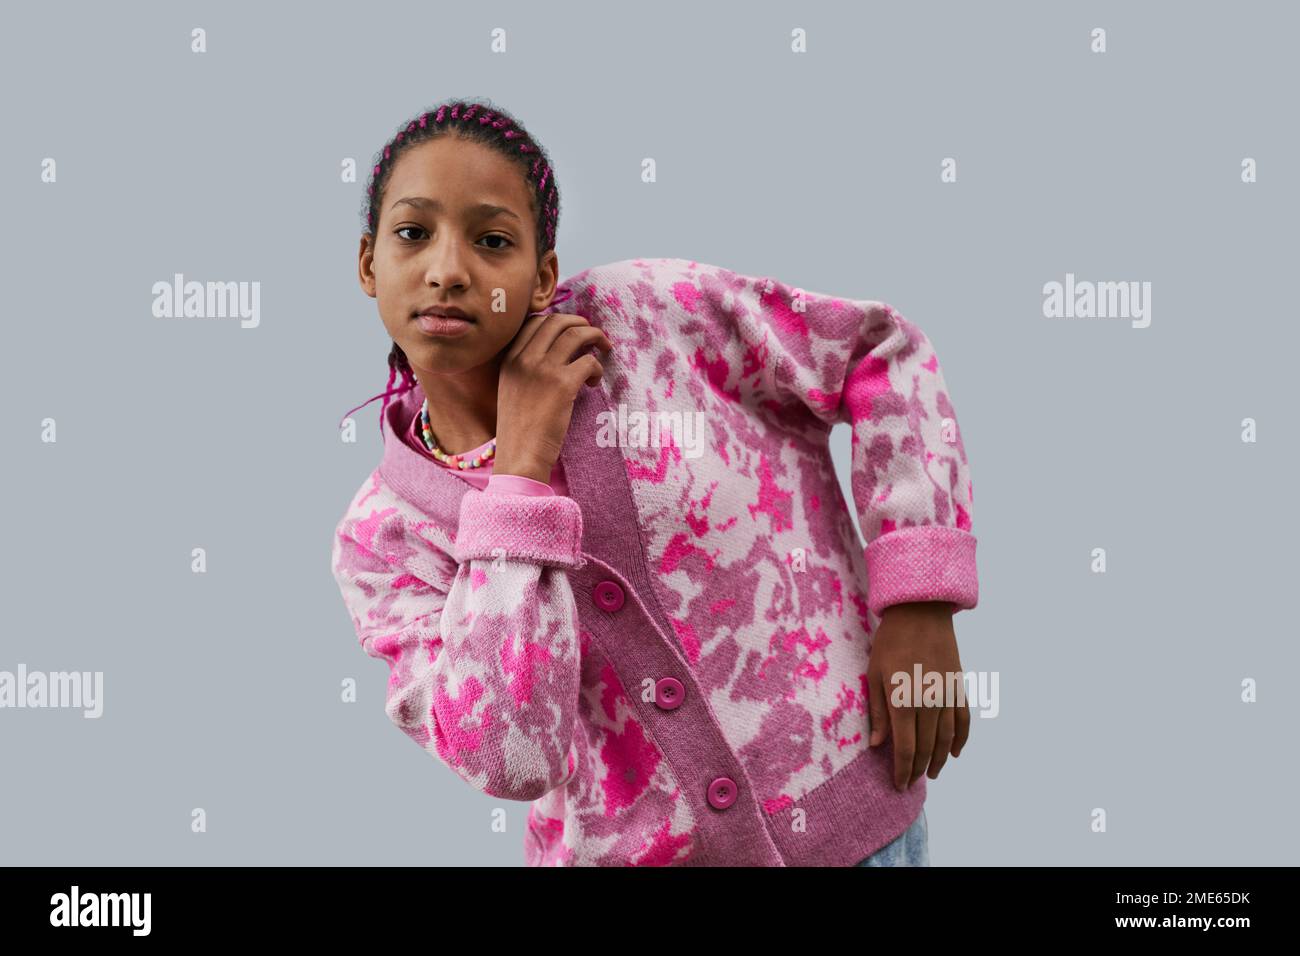 Vita in su ritratto di ragazza adolescente nera che indossa abiti rosa alla moda posa stile su sfondo blu Foto Stock